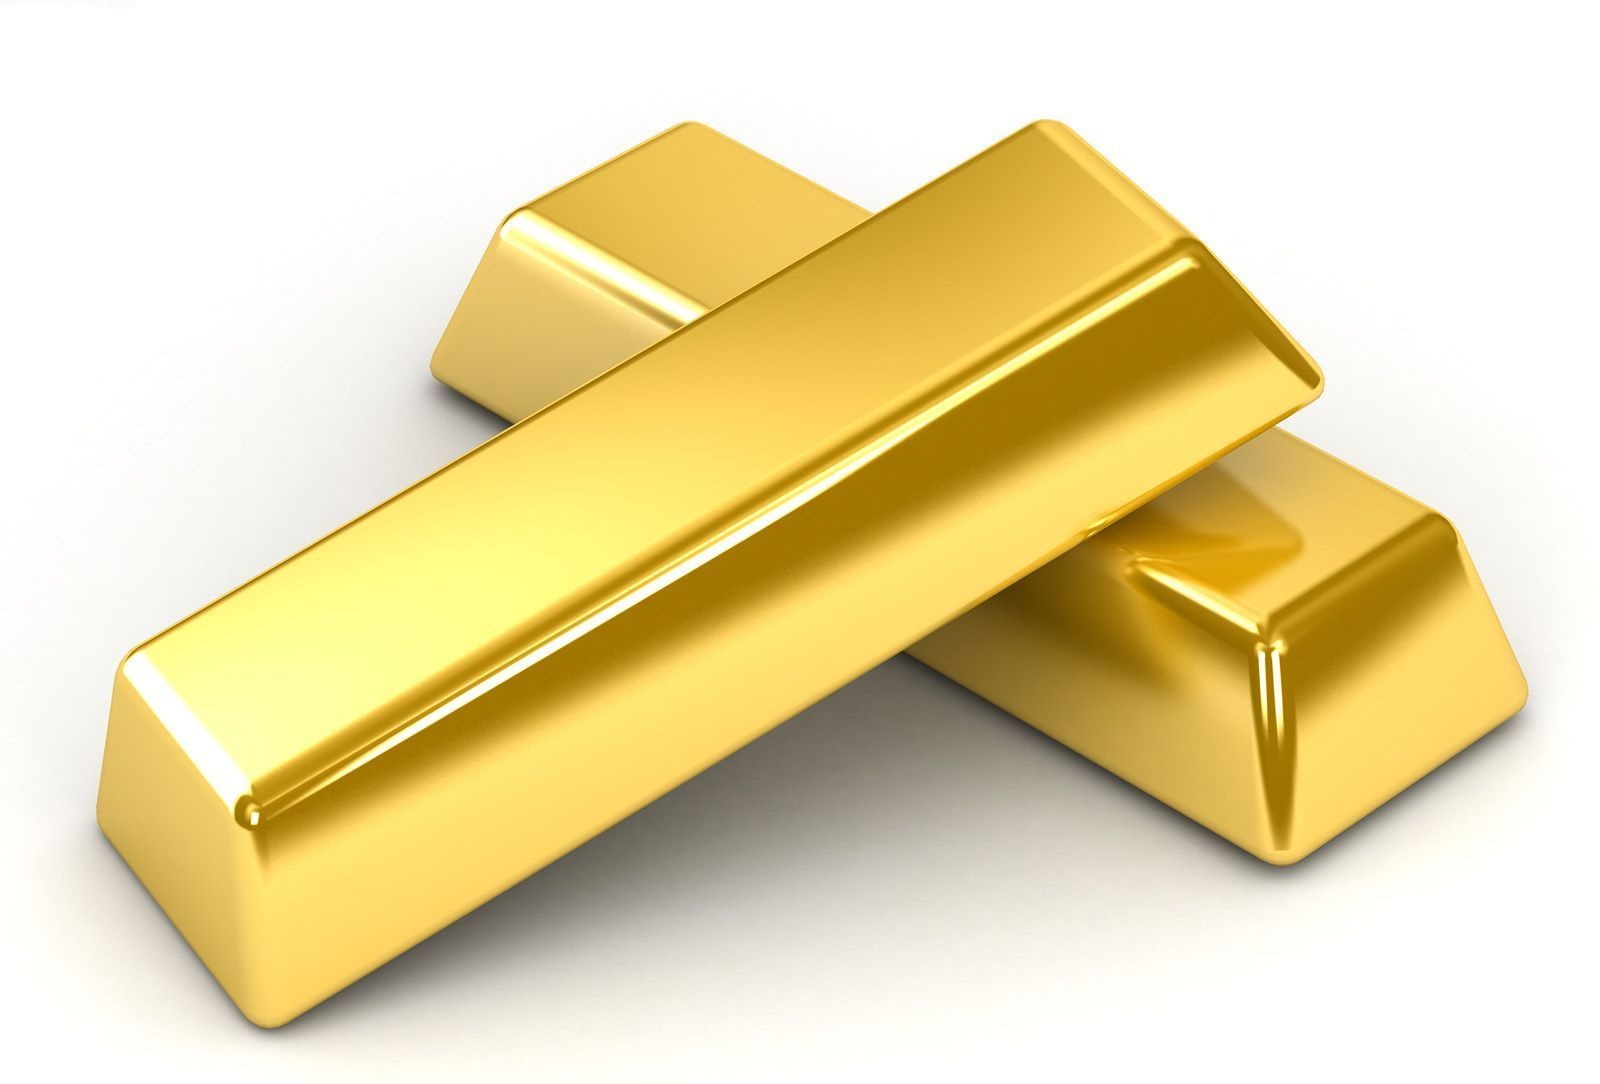 2019年全年印度黄金进口量下降 高企金价继续施压